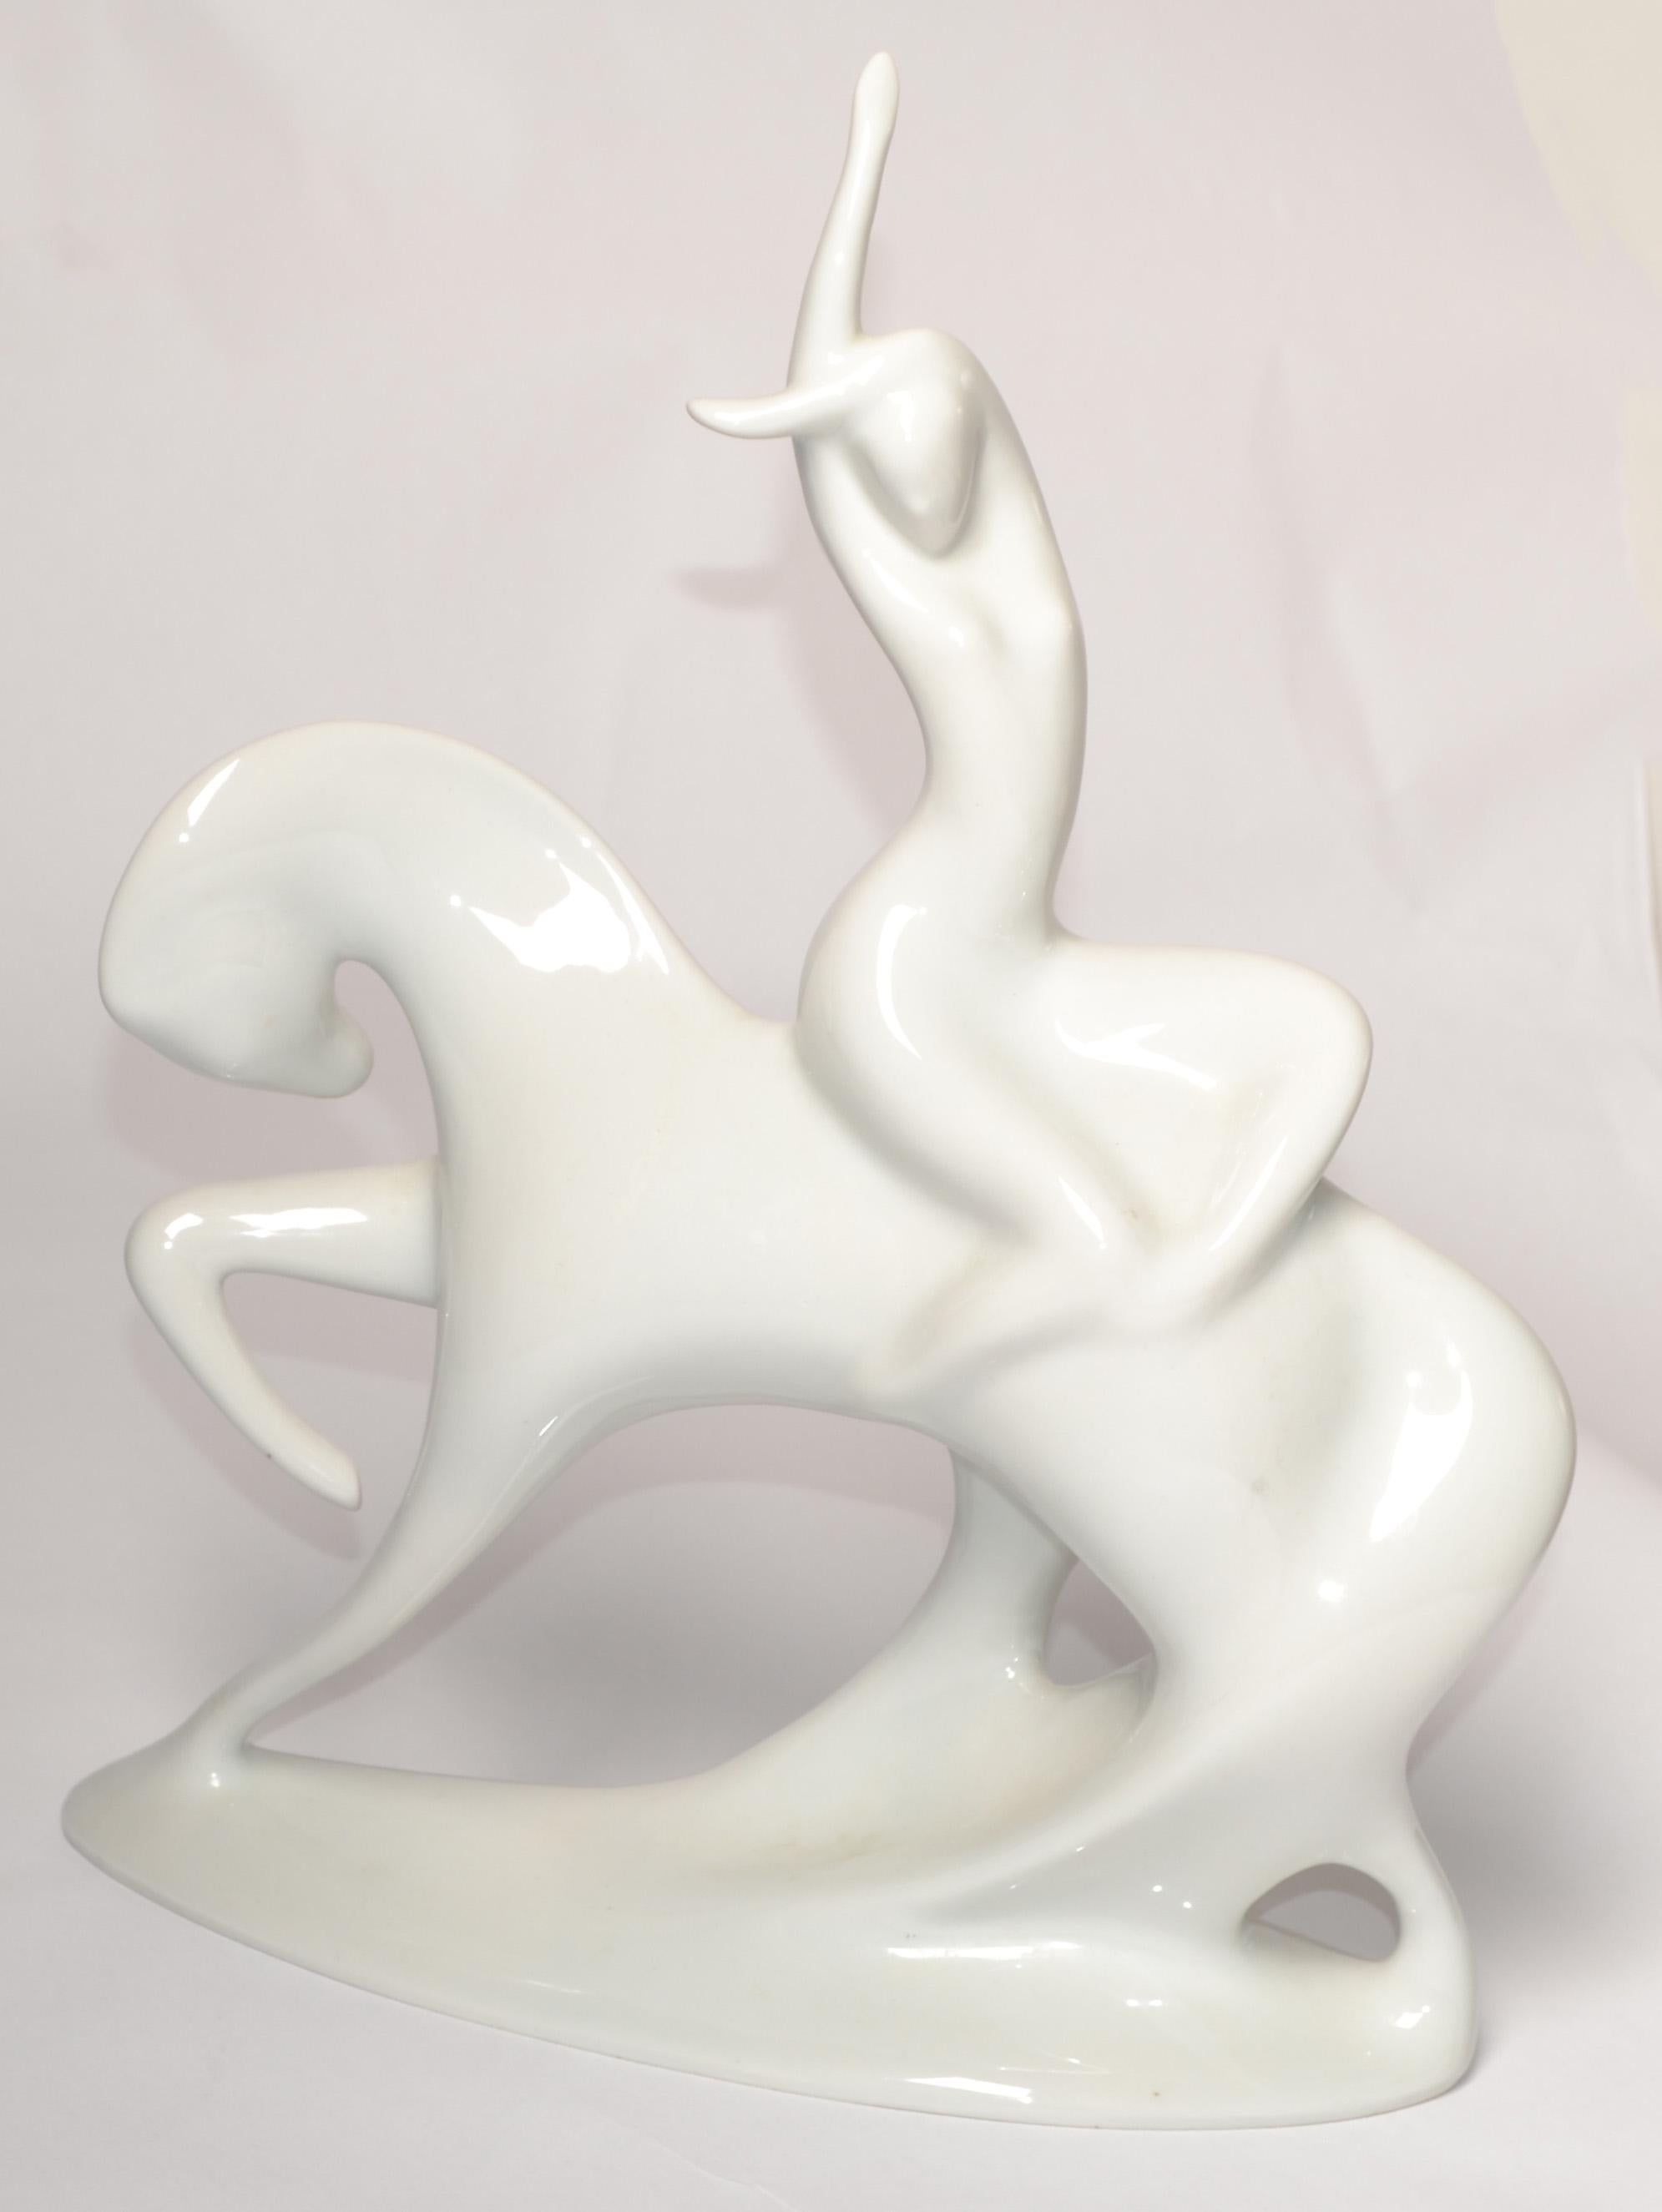 1960s Jitro Porcelain Porcelain Hand-Paintted Statue by Jaroslav Ježek for Royal Dux Bohemia Sculpture made in the Czech Republic circa 1966.
Représentation d'une femme nue montée sur un cheval. Figurine, statue ou sculpture en porcelaine blanche